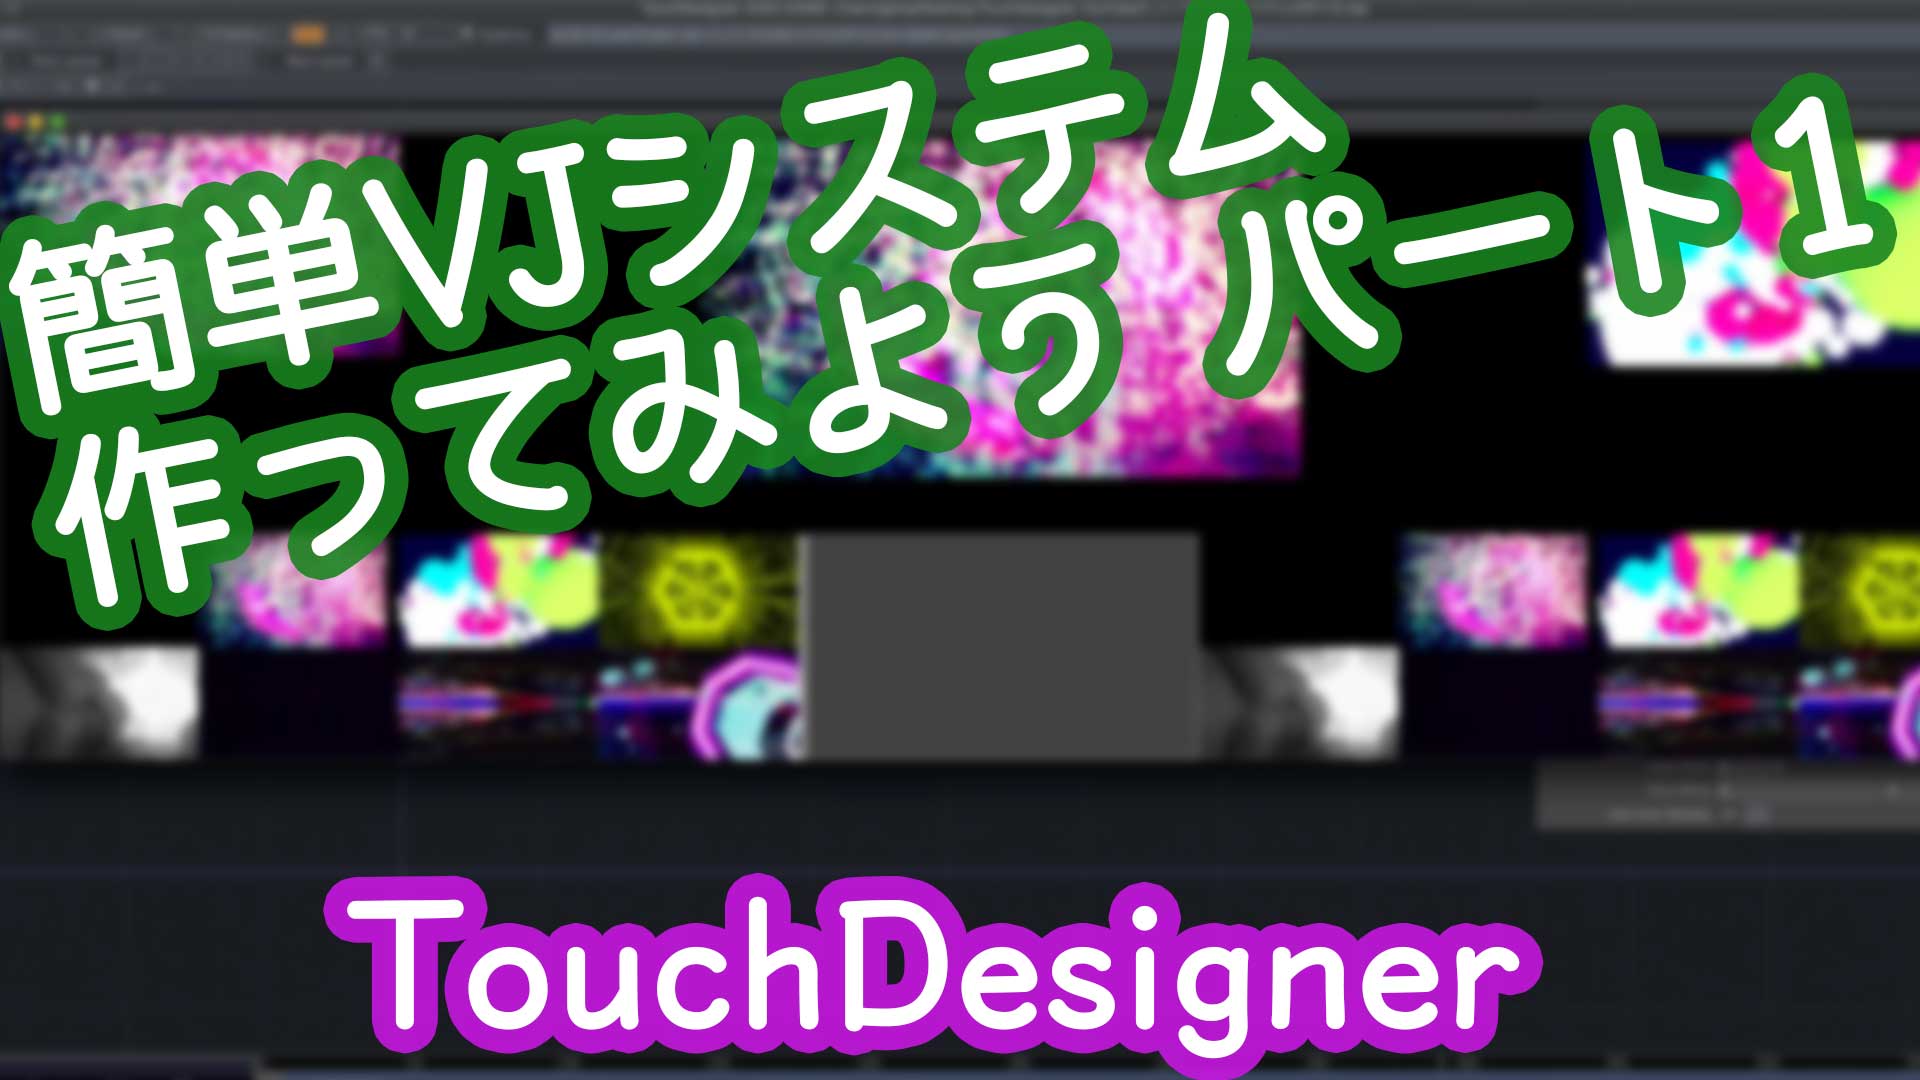 TouchDesigner VJ